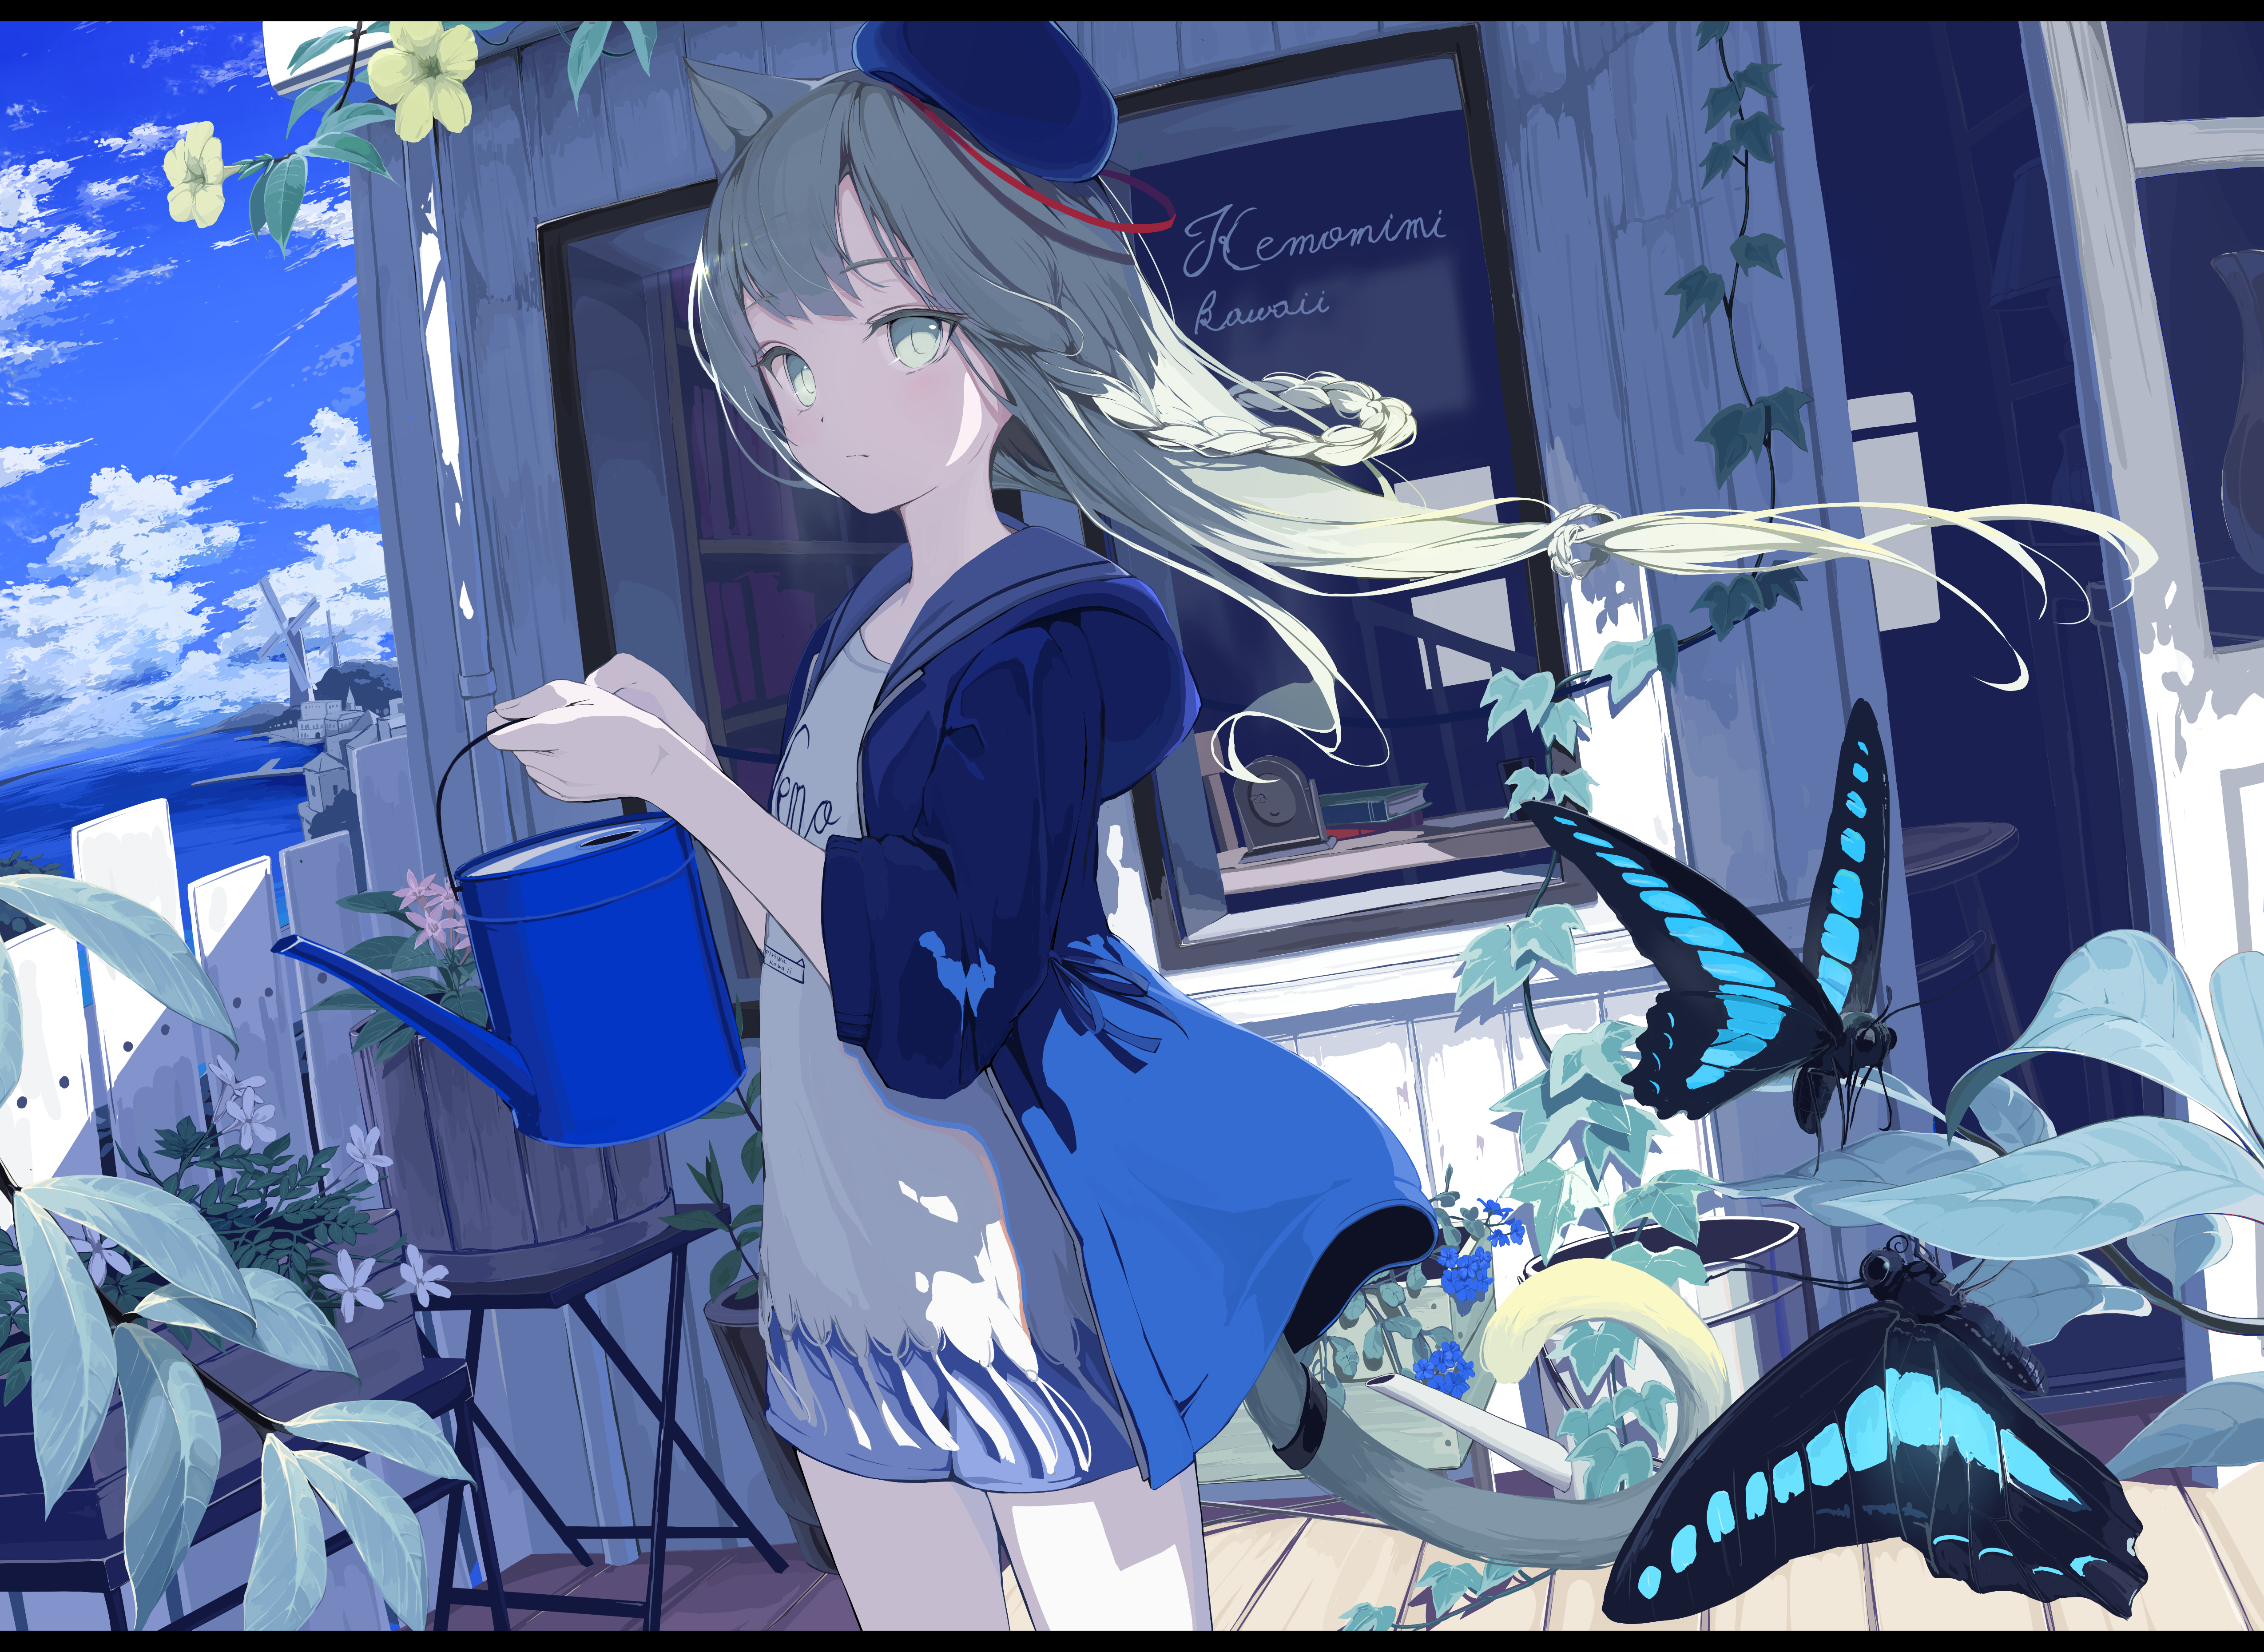 Anime gamer girl, gaming anime girl aesthetic HD phone wallpaper | Pxfuel